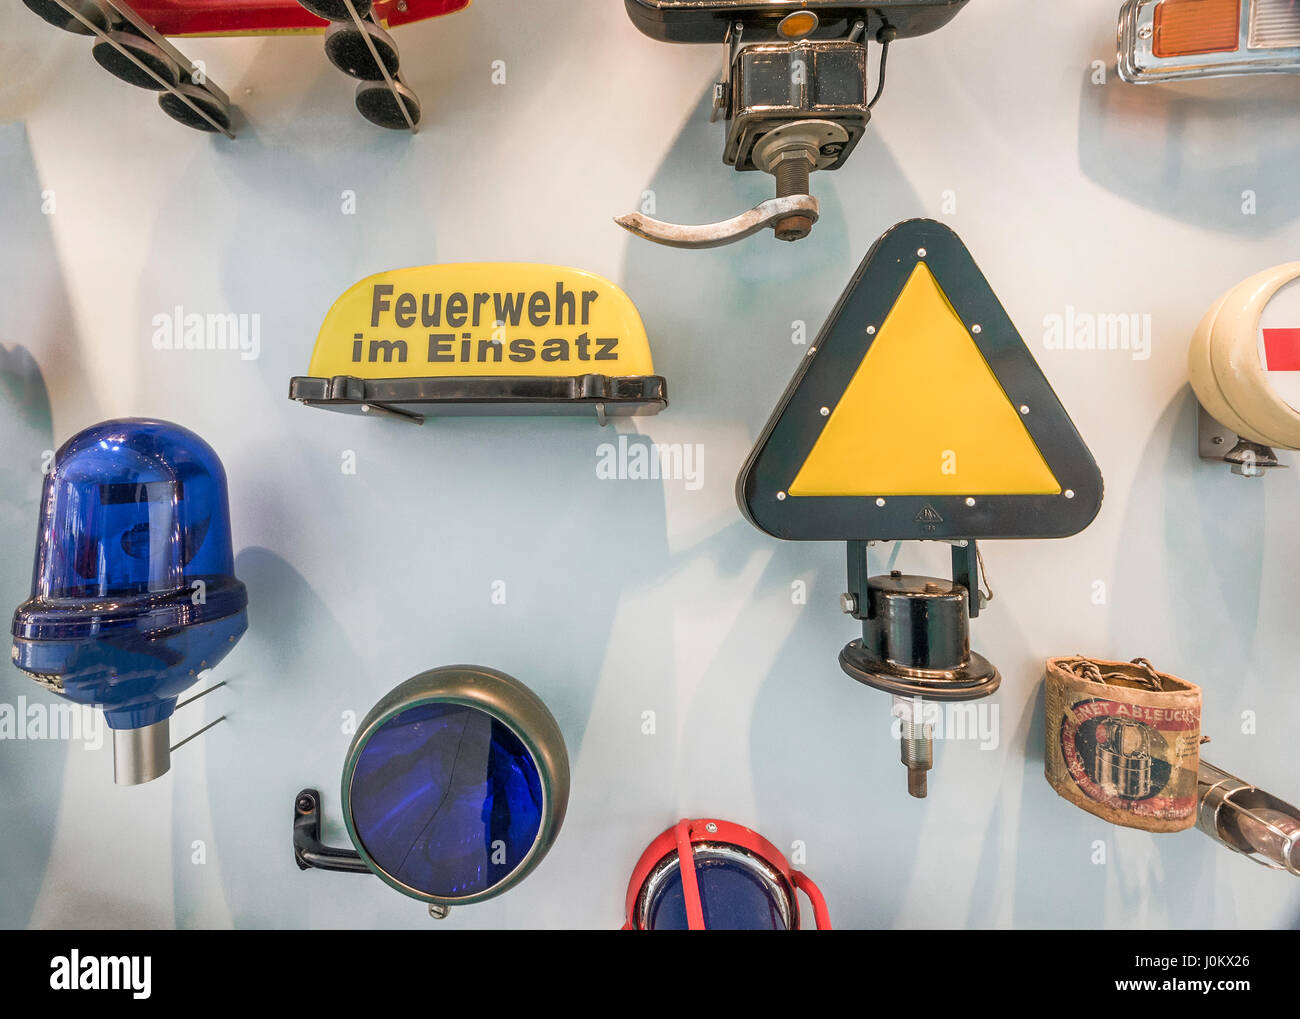 Accessoires de voiture à l'exposition du musée Mercedes Benz Photo